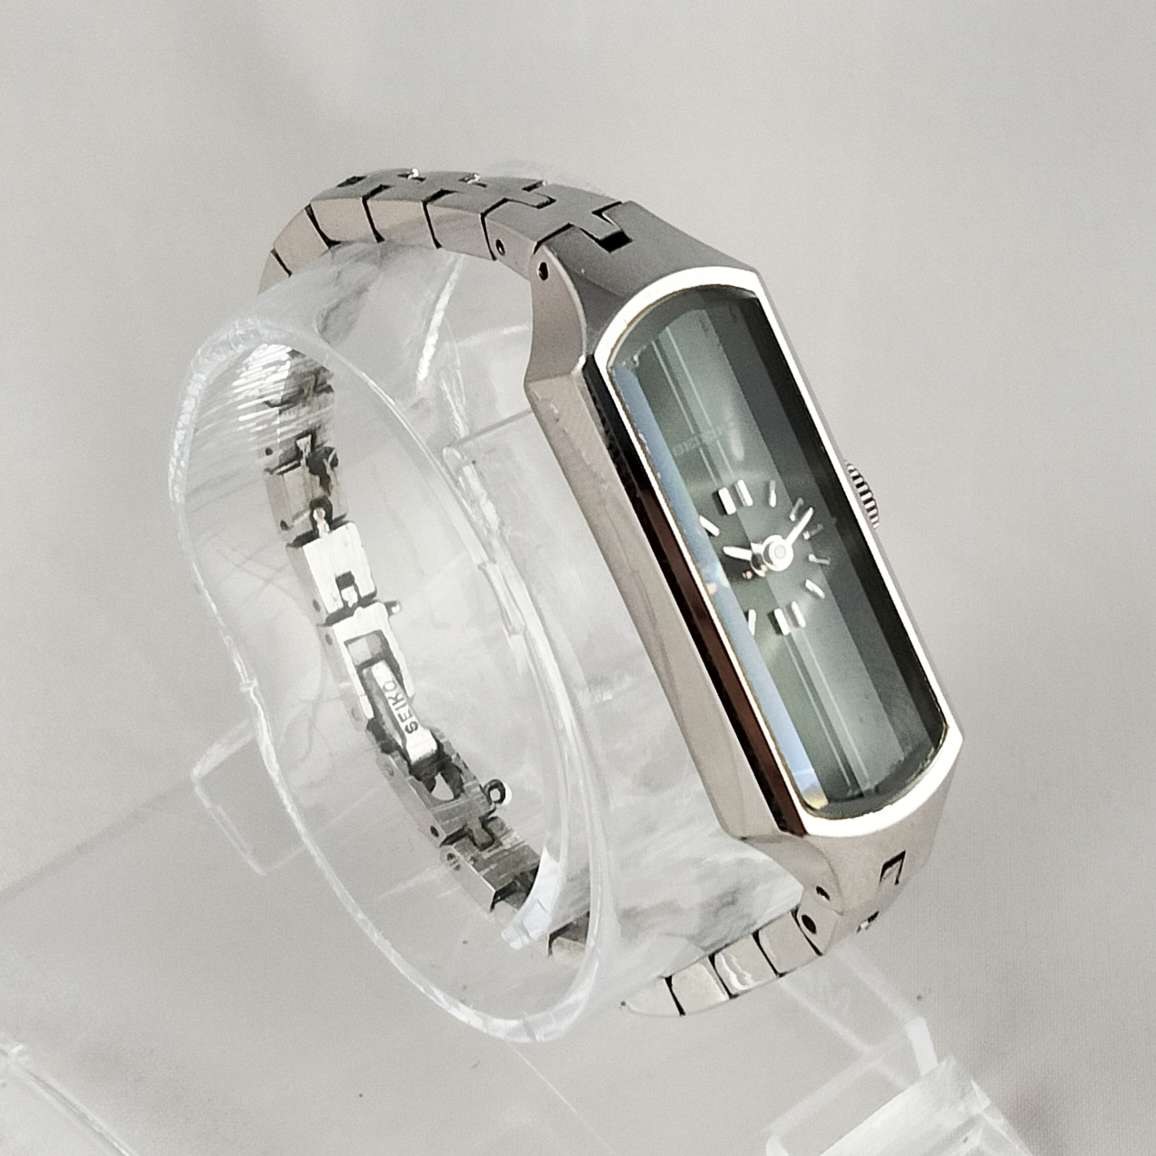 Seiko Petite Watch, Green Elongated Dial, Bracelet Strap